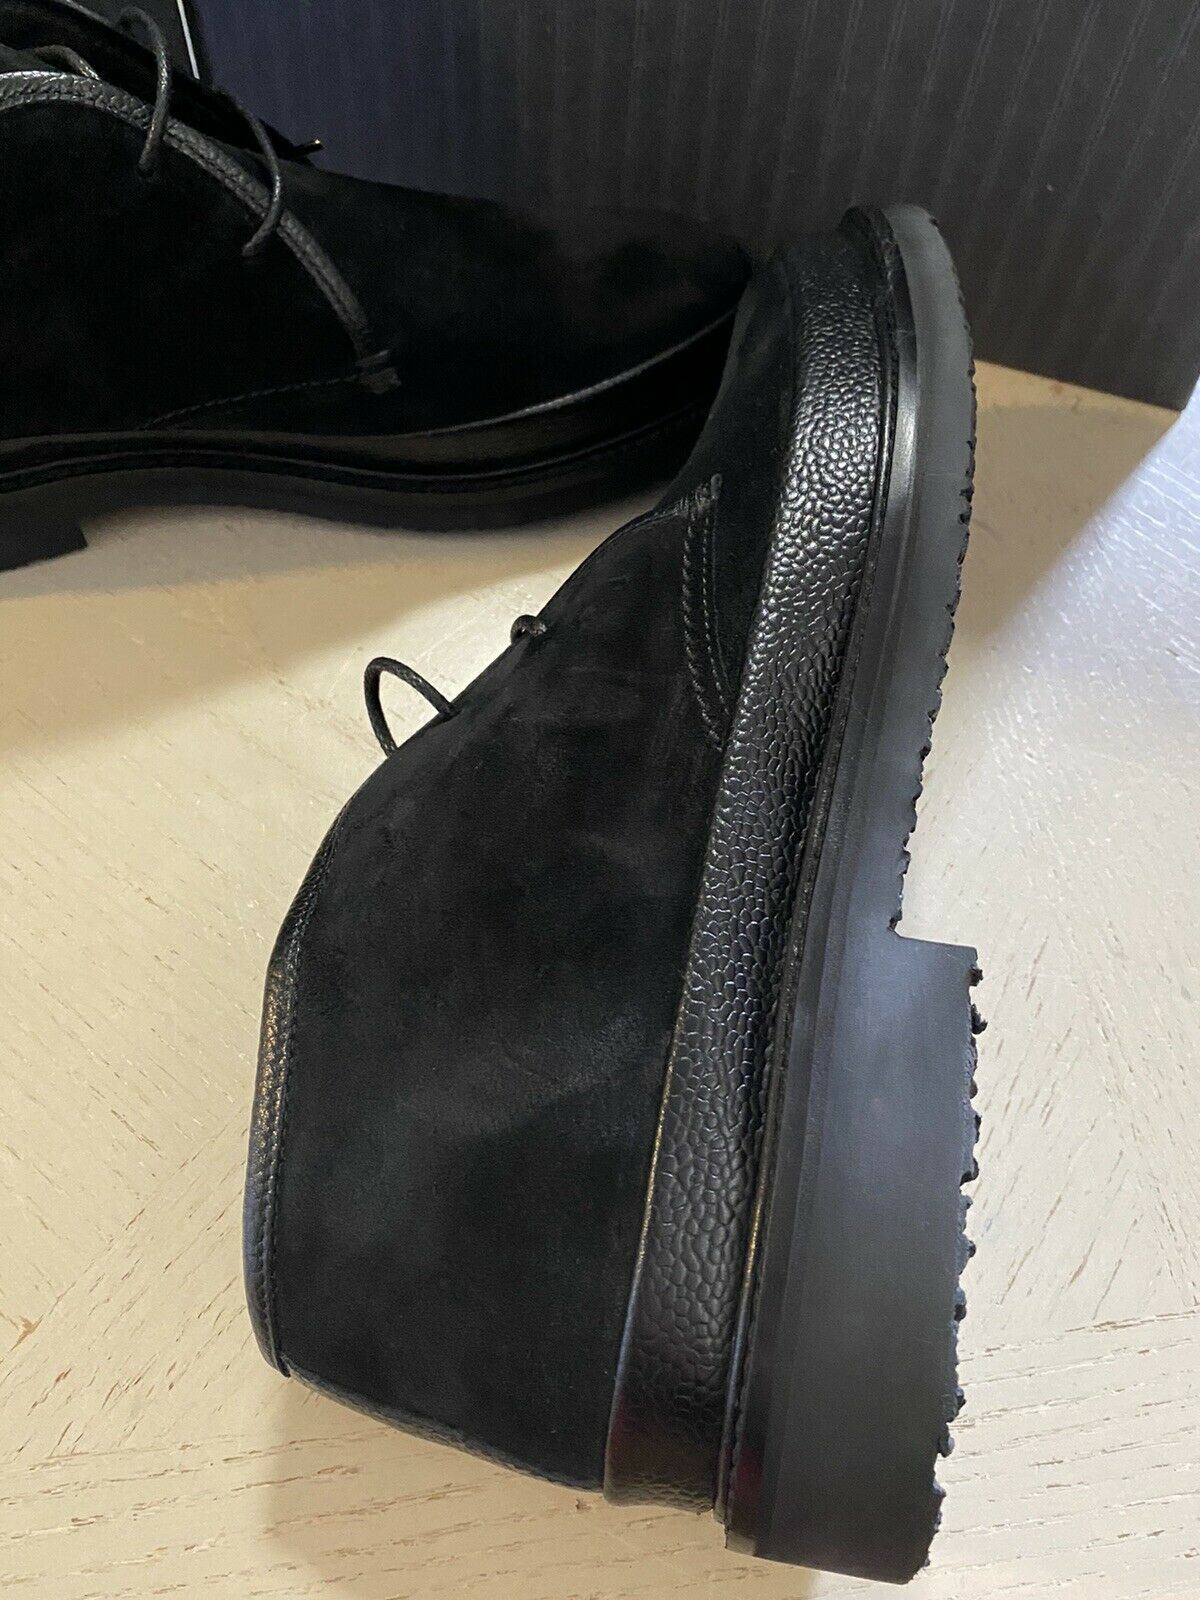 Новые замшевые/кожаные ботинки Ermenegildo Zegna за 650 долларов США, черные 9, США, Италия 